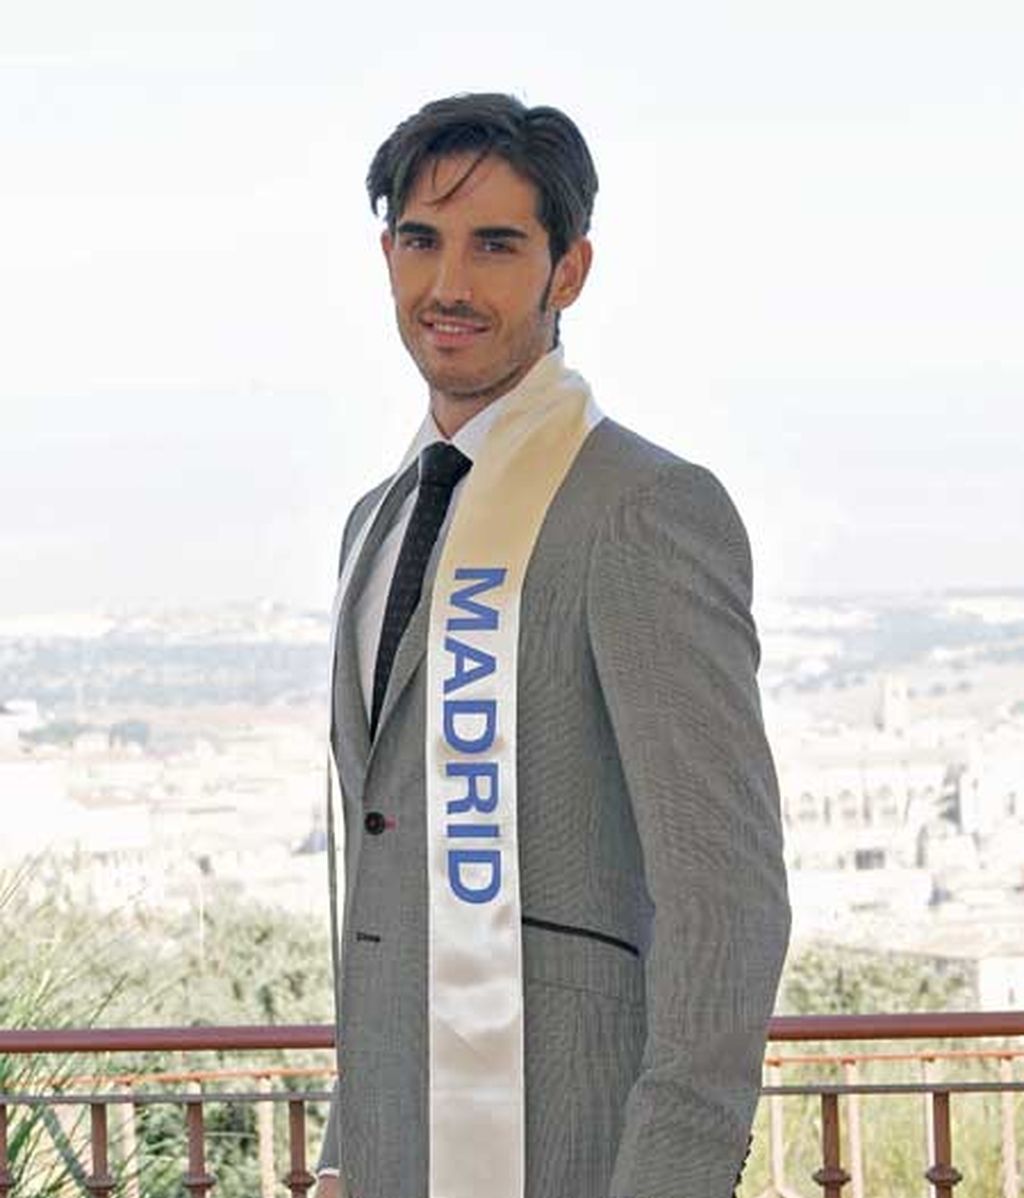 Mister España 2010